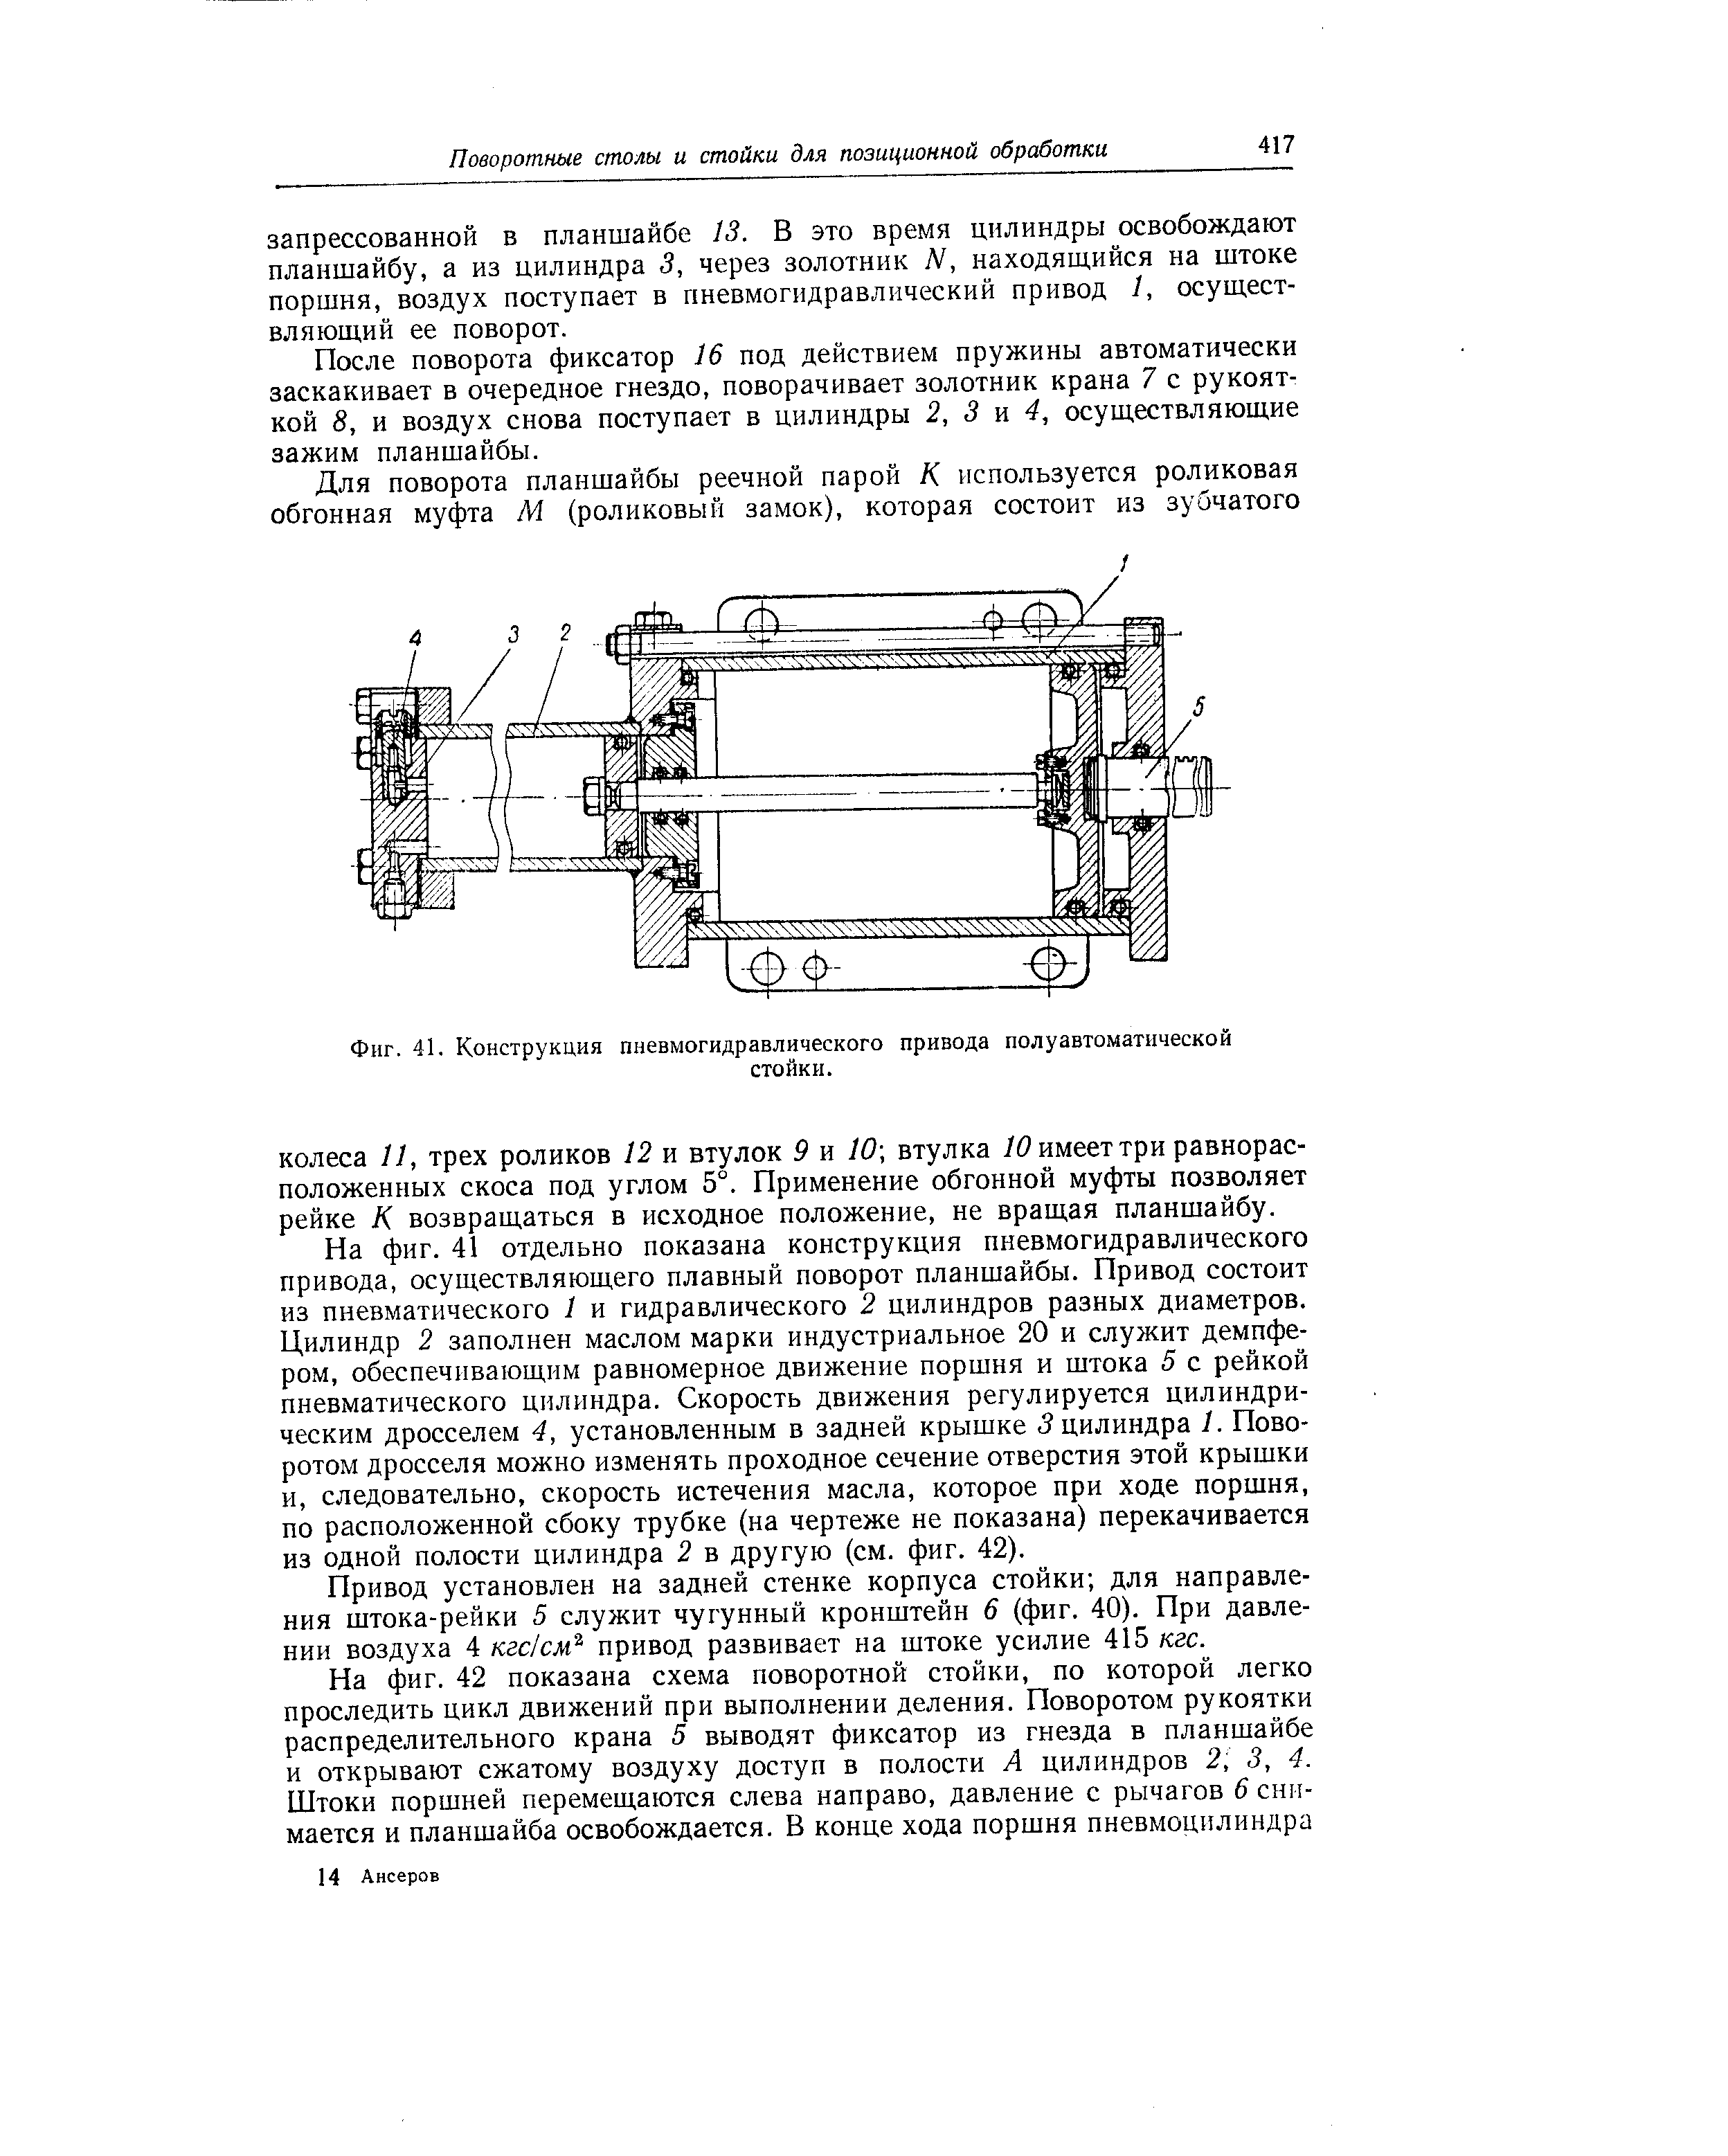 Фиг. 41. Конструкция пневмогидравлического привода полуавтоматической
